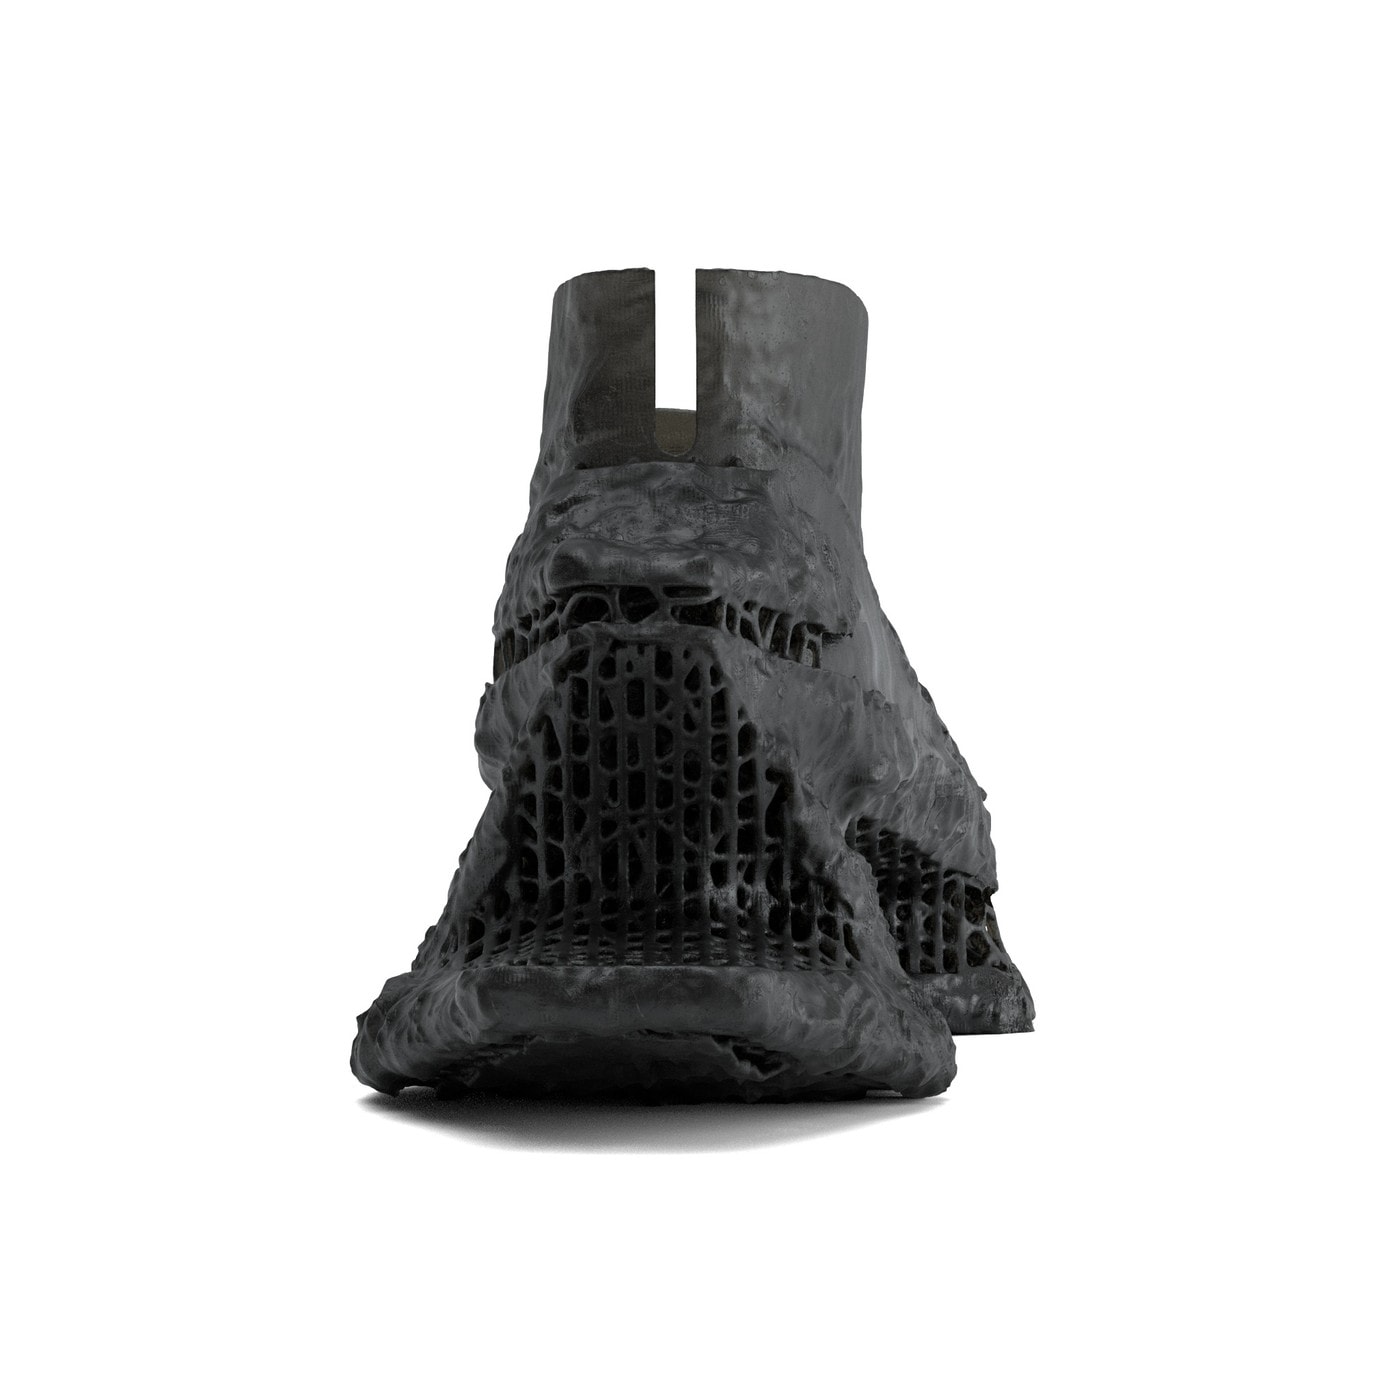 SCRY 正式發布全新 Stela Basic & Erosion 鞋款系列